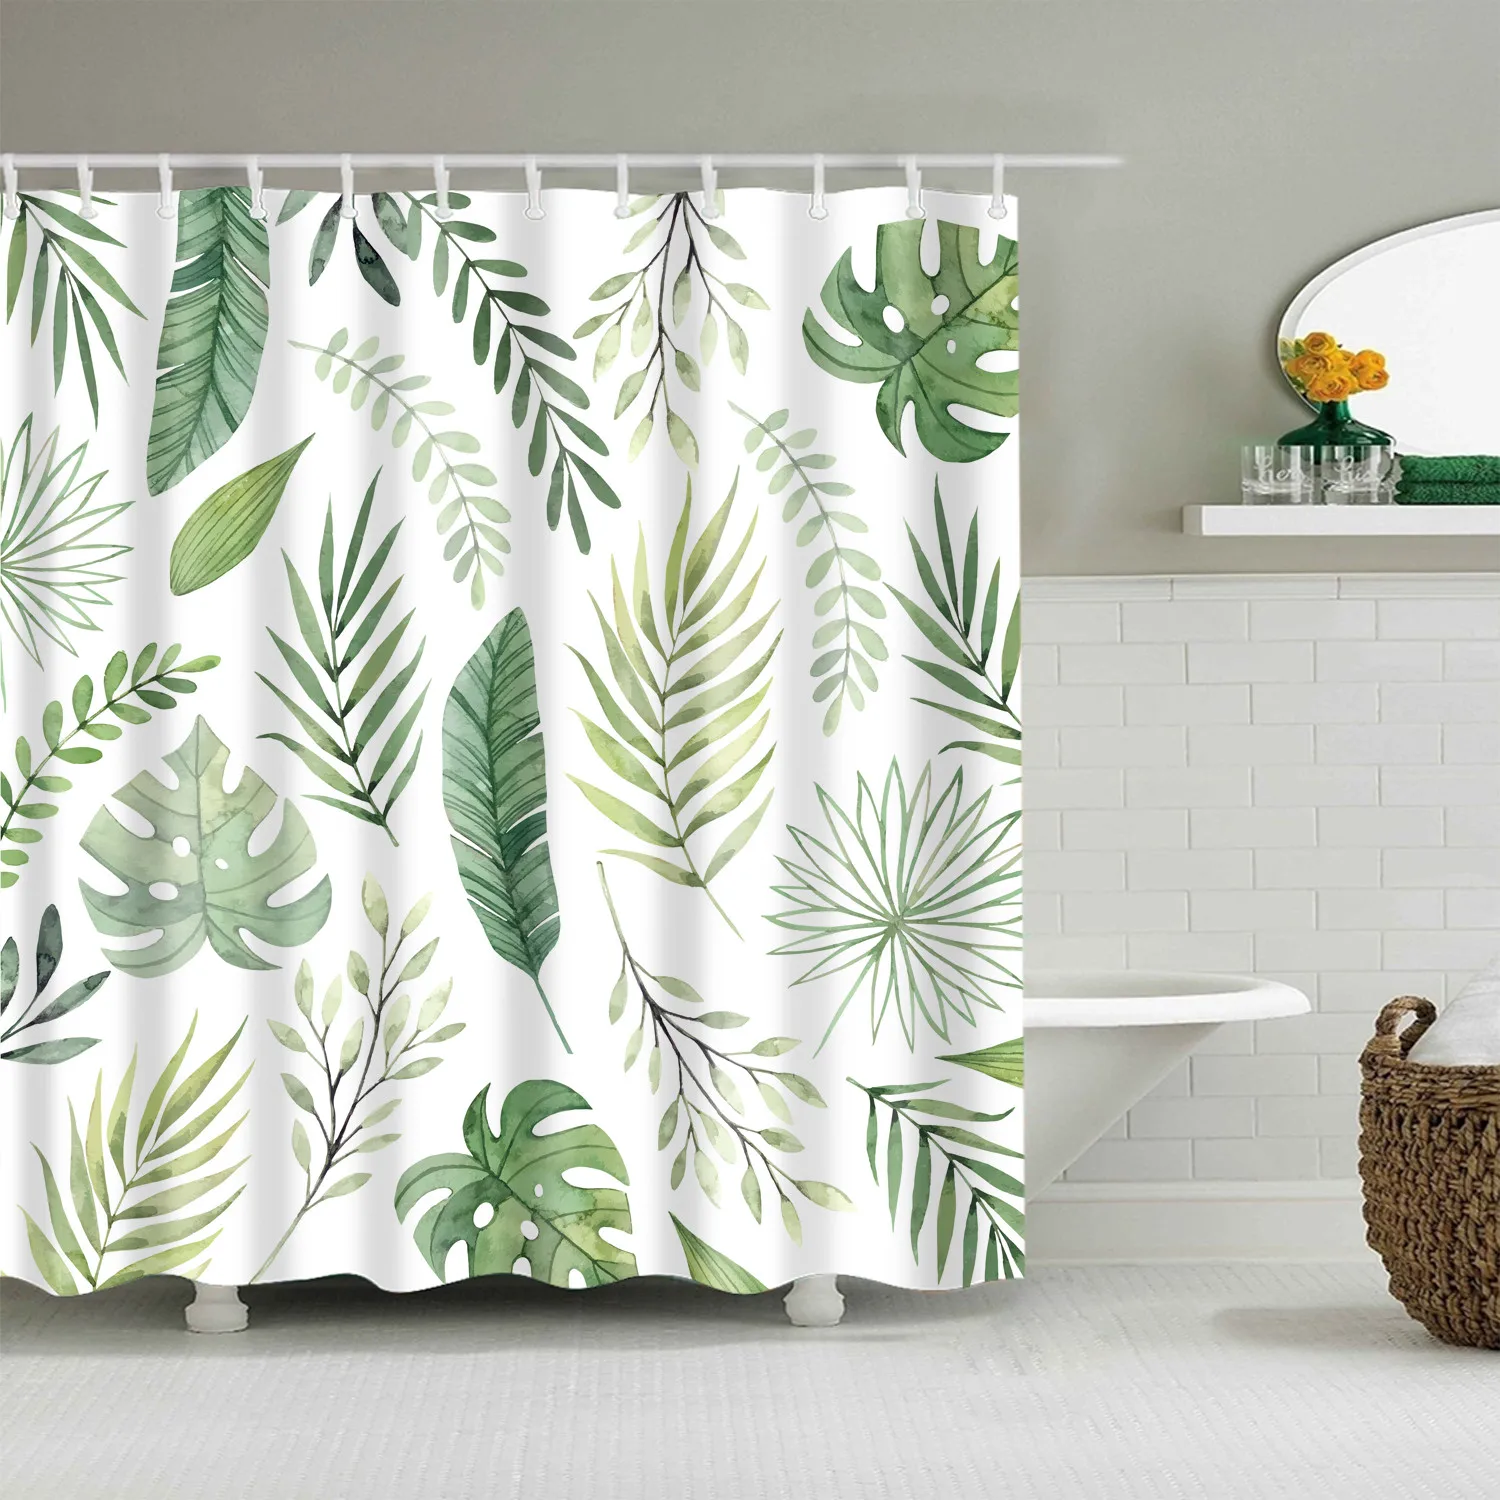 Водостойкая полиэфирная ткань занавеска для душа 180x200 см Зеленые растения занавеска для ванной комнаты 3d печать затемненная занавеска для душа